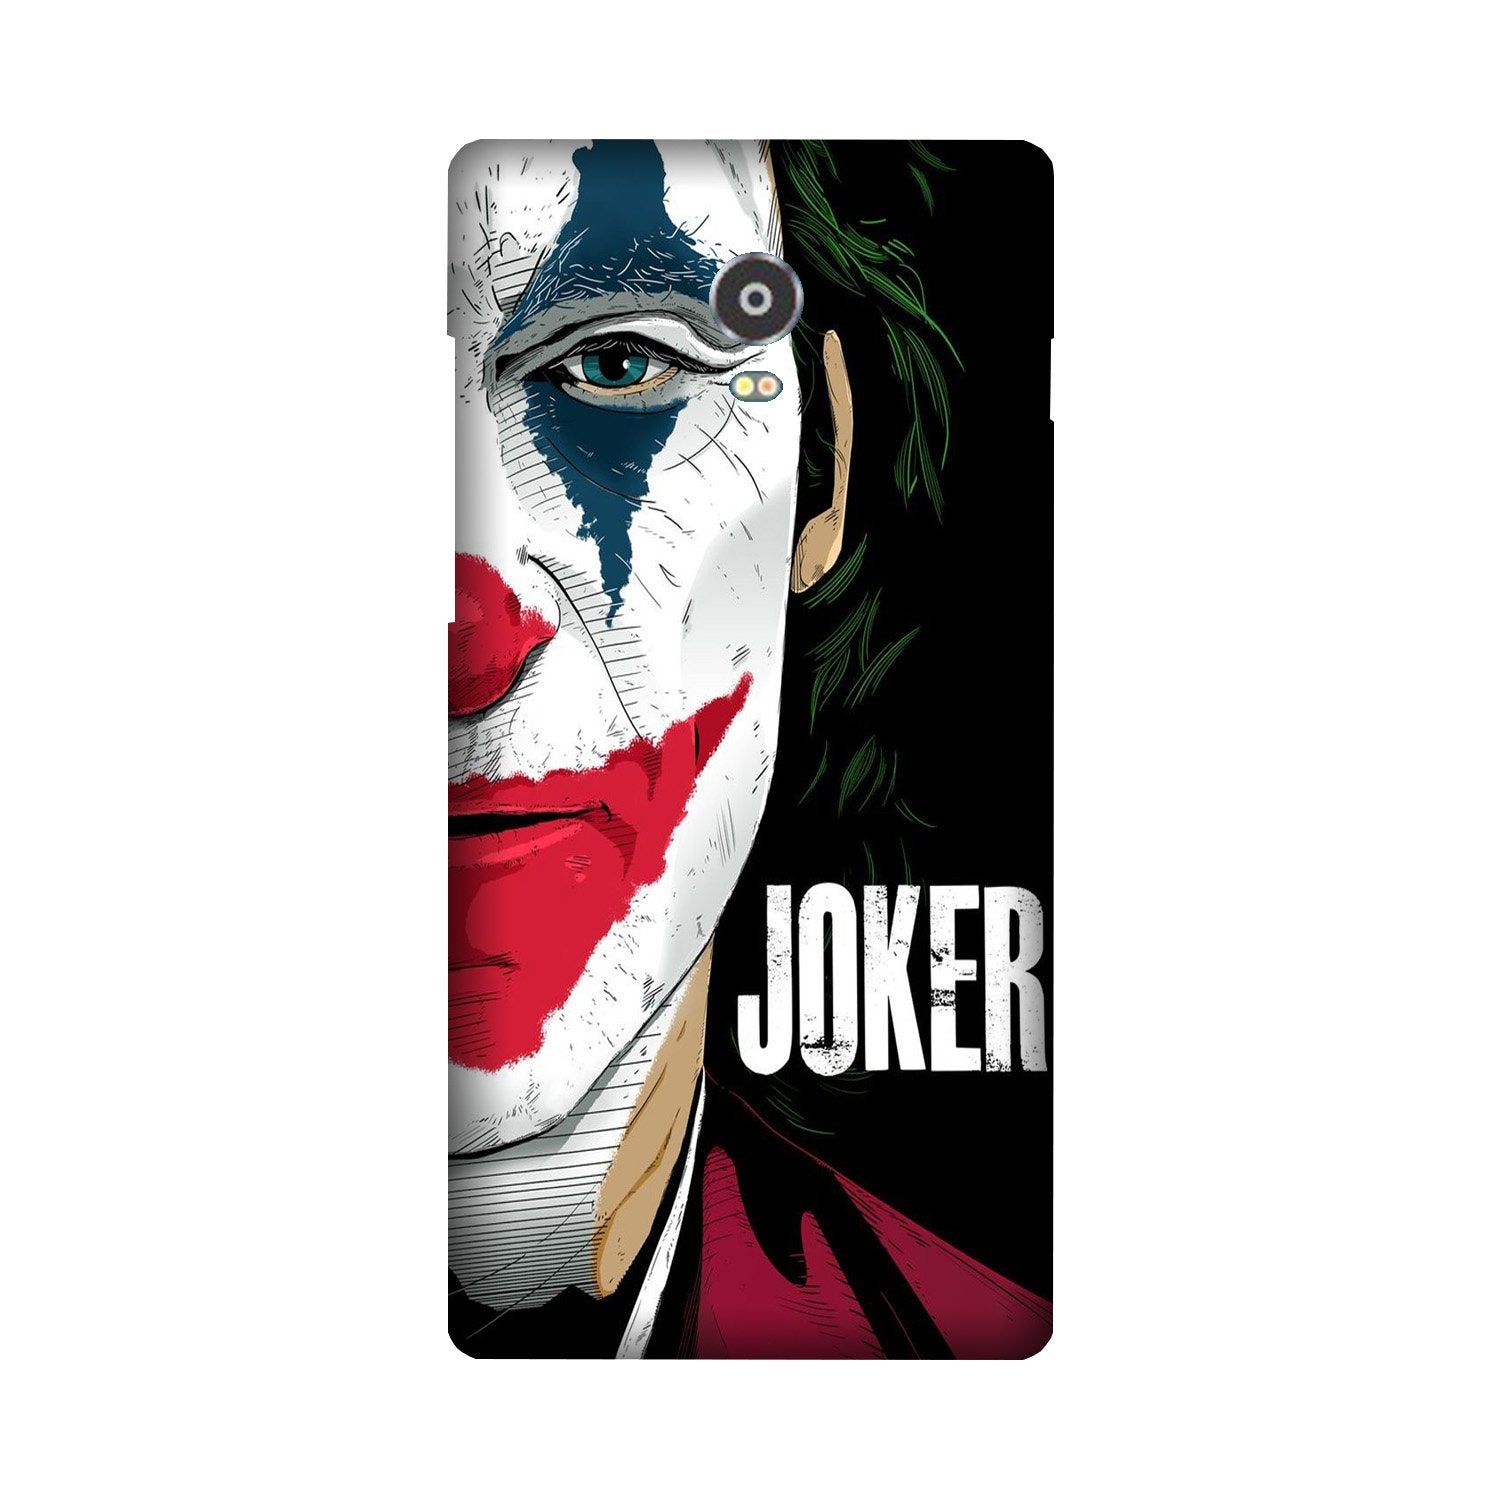 Joker Mobile Back Case for Lenovo Vibe P1 (Design - 301)